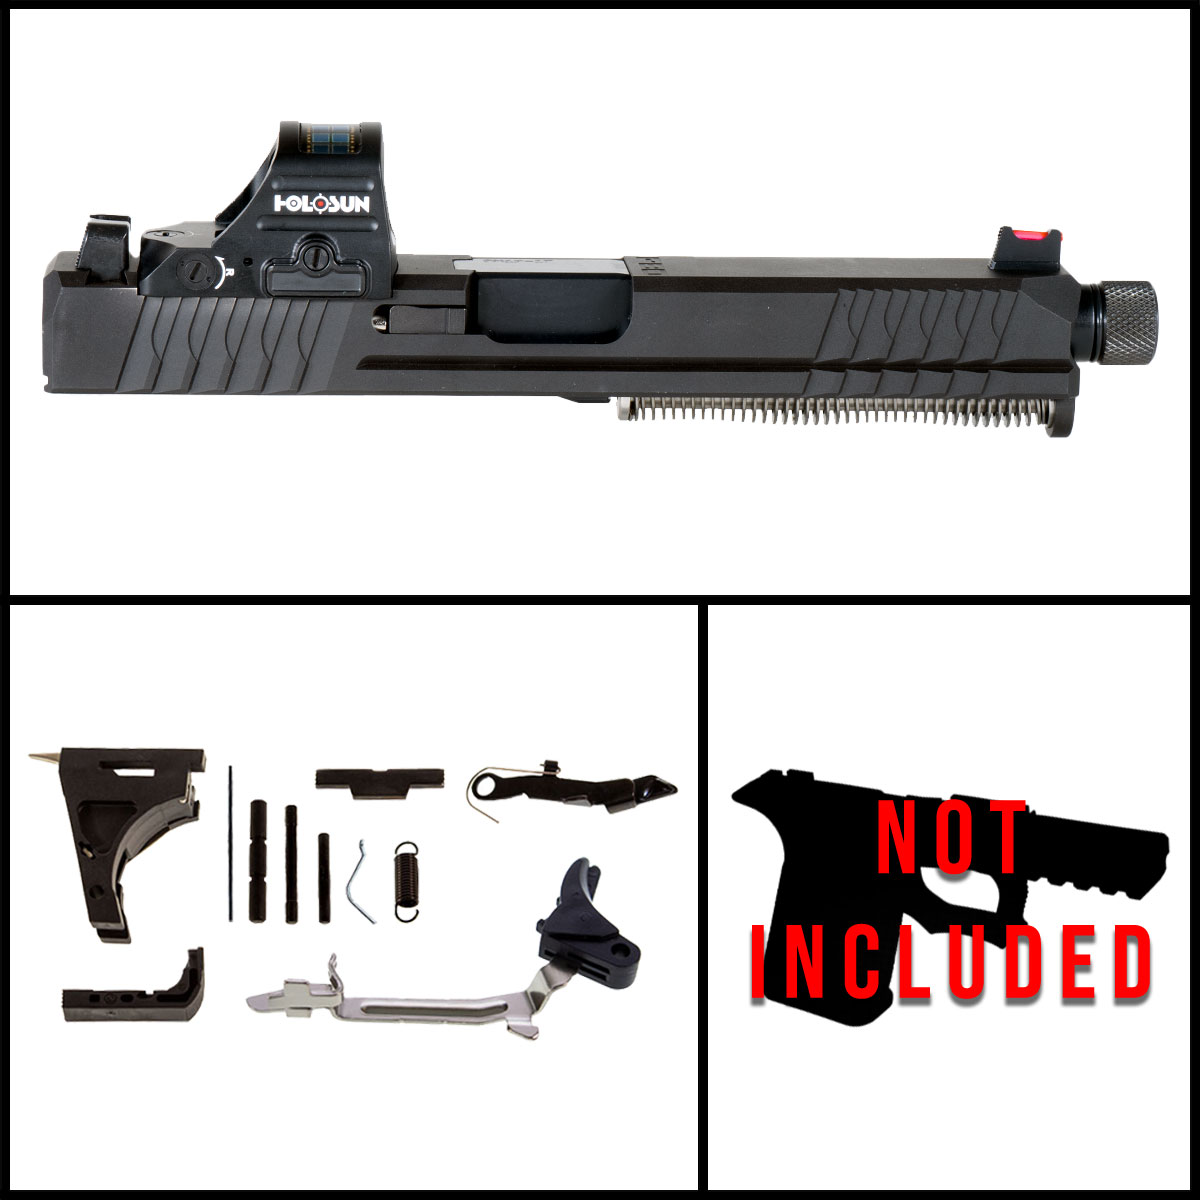 DTT 'Heartstone' 9mm Full Gun Kit (Everything minus Frame) - Glock 17 Gen 1-3 Compatible